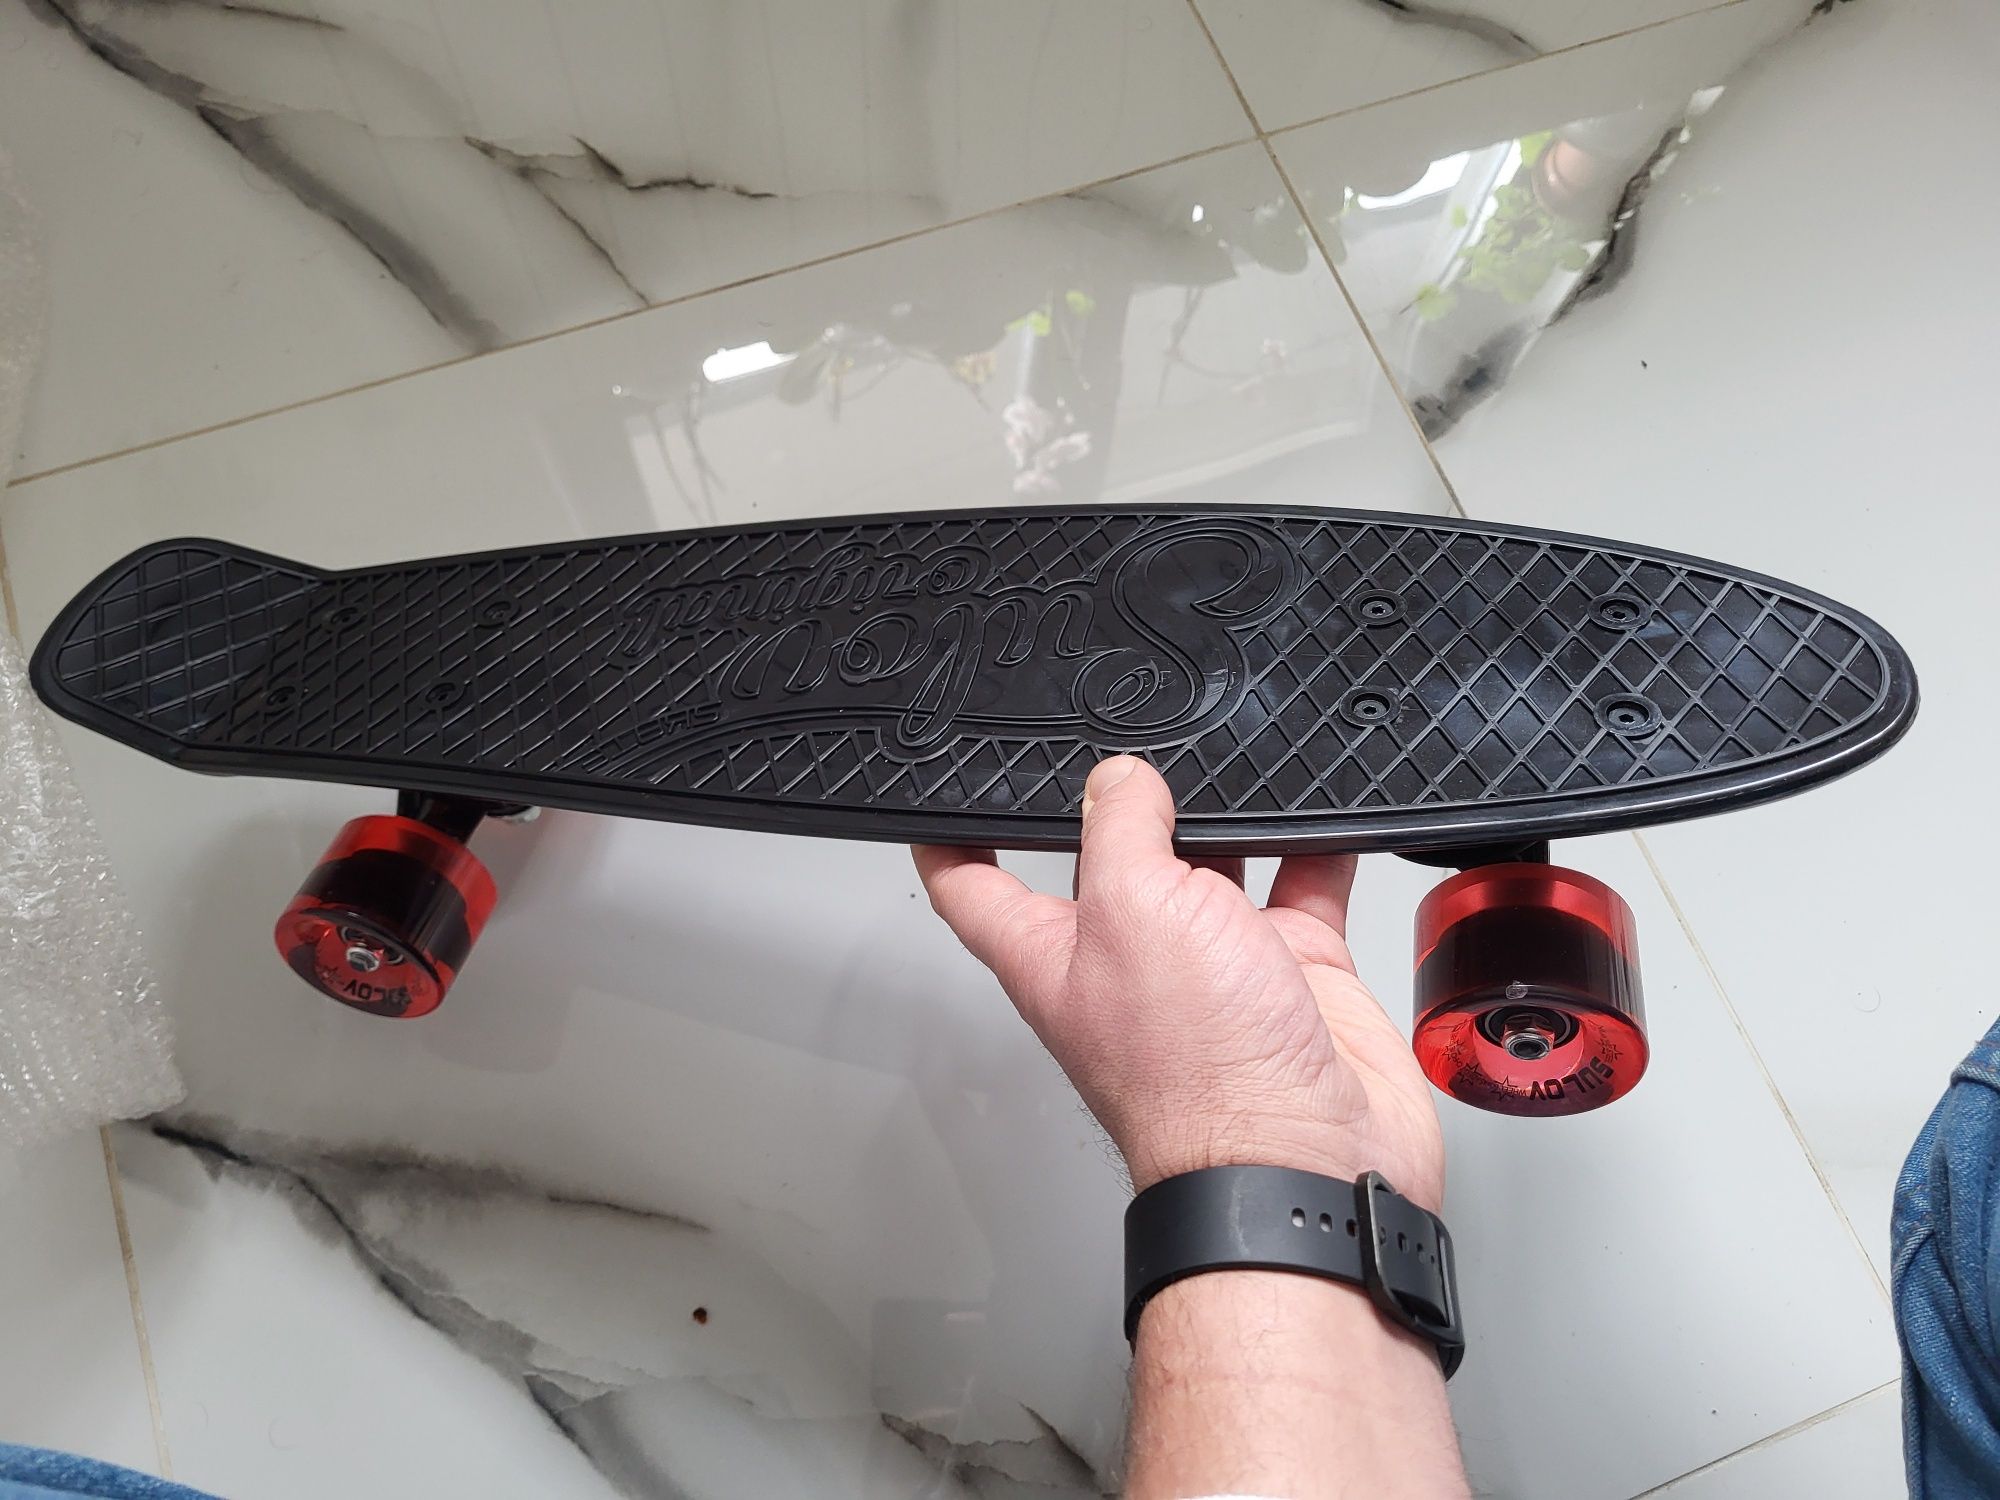 Vand Skateboard culoare negru, nou